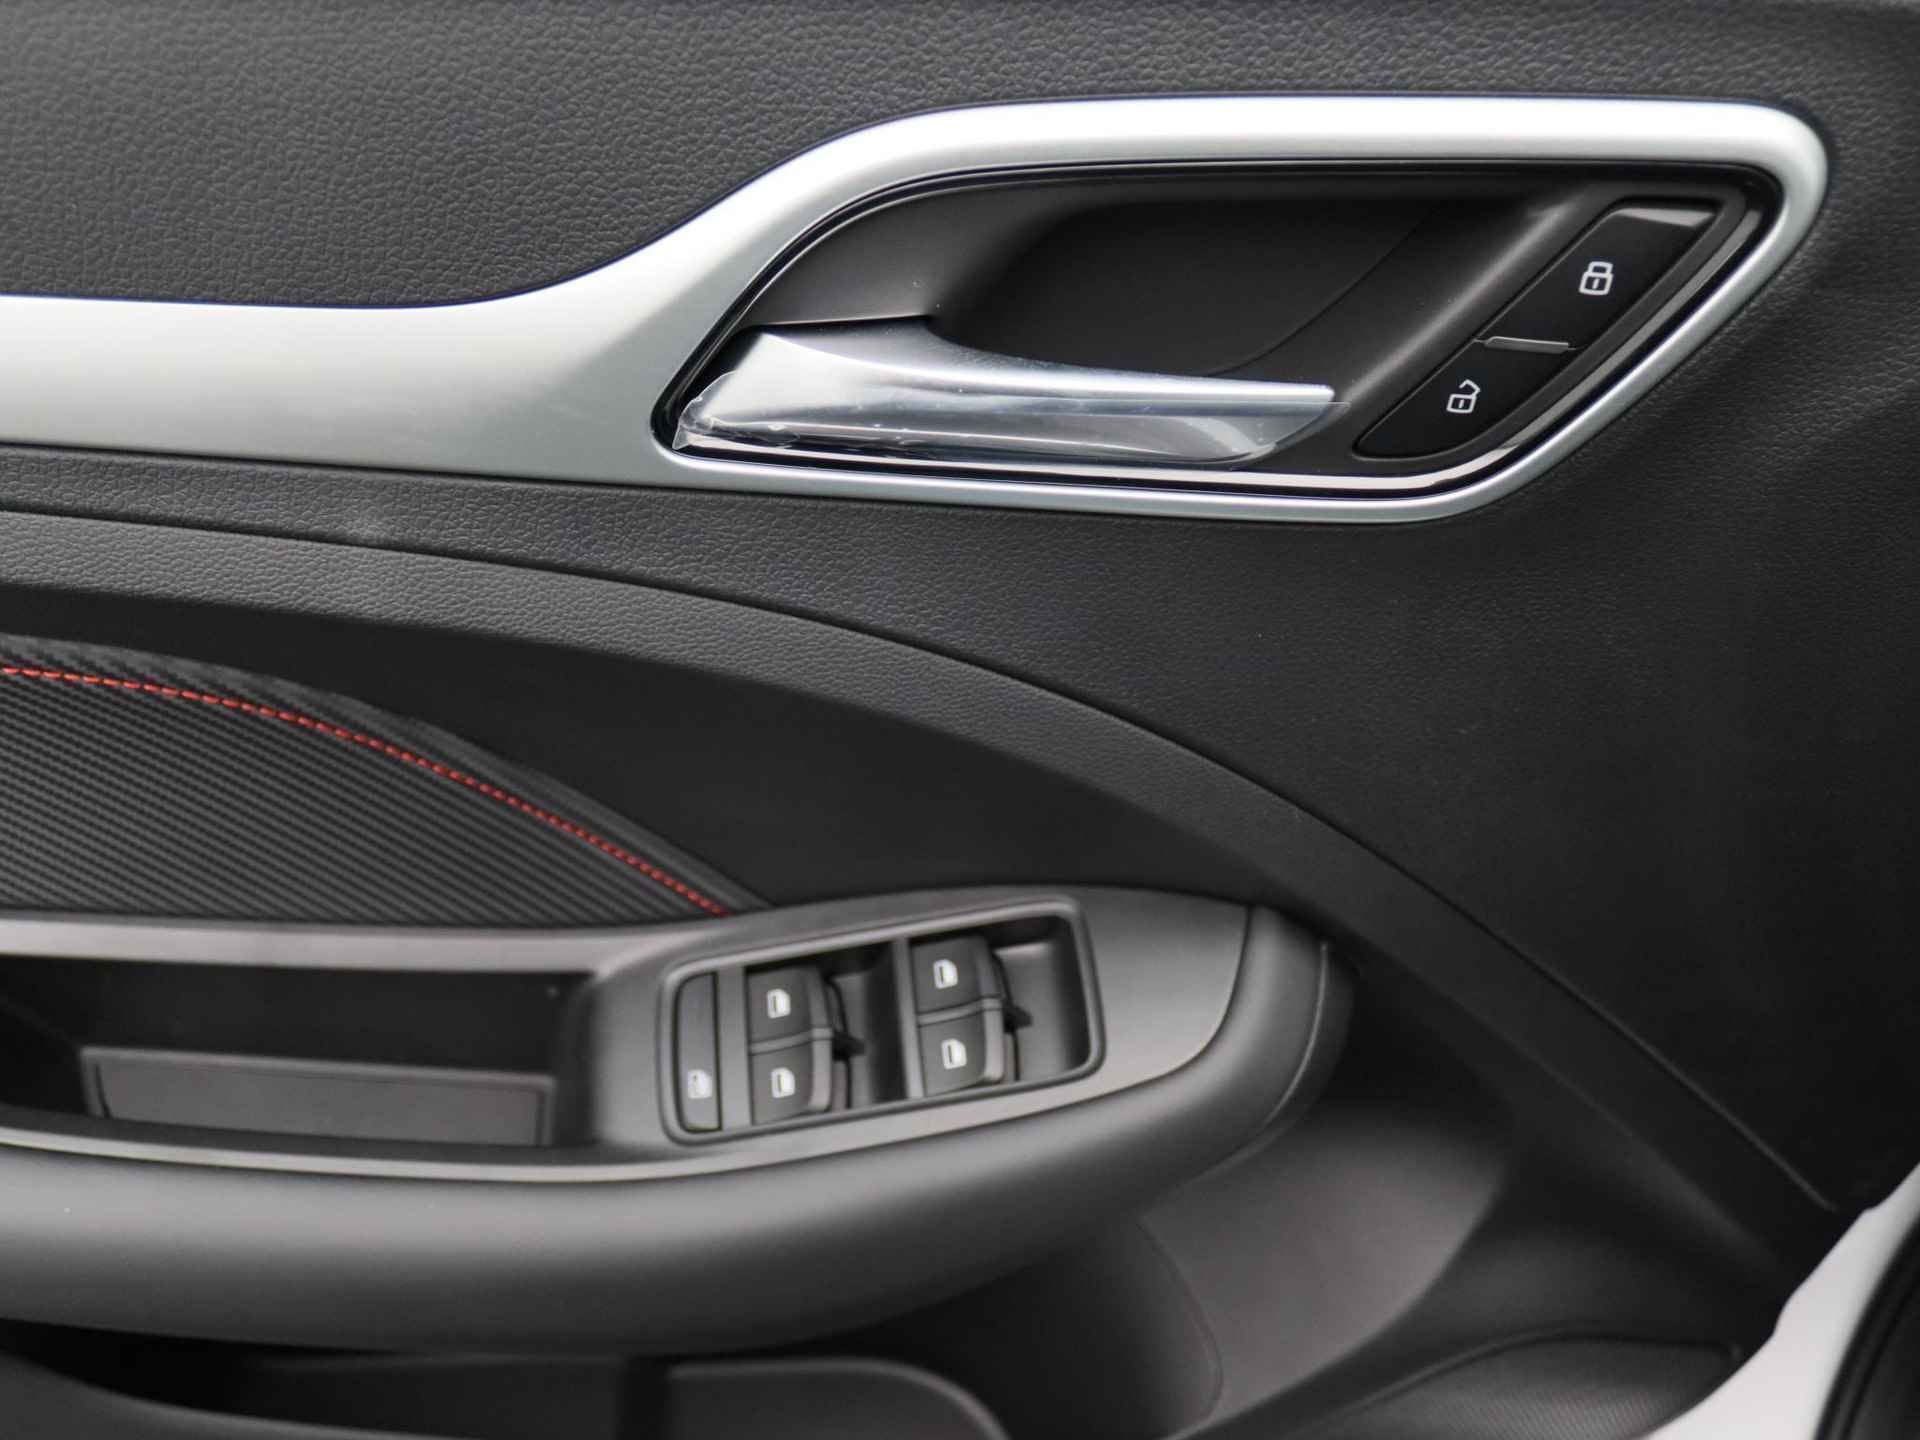 MG ZS EV Standard Range Luxury | 320 km WLTP | Navigatie | Panorama dak | 7 jaar 150.000 km garantie | Nu €2500,- Upgrade Actie Voordeel! | Wordt in alle kleuren verwacht! - 17/19